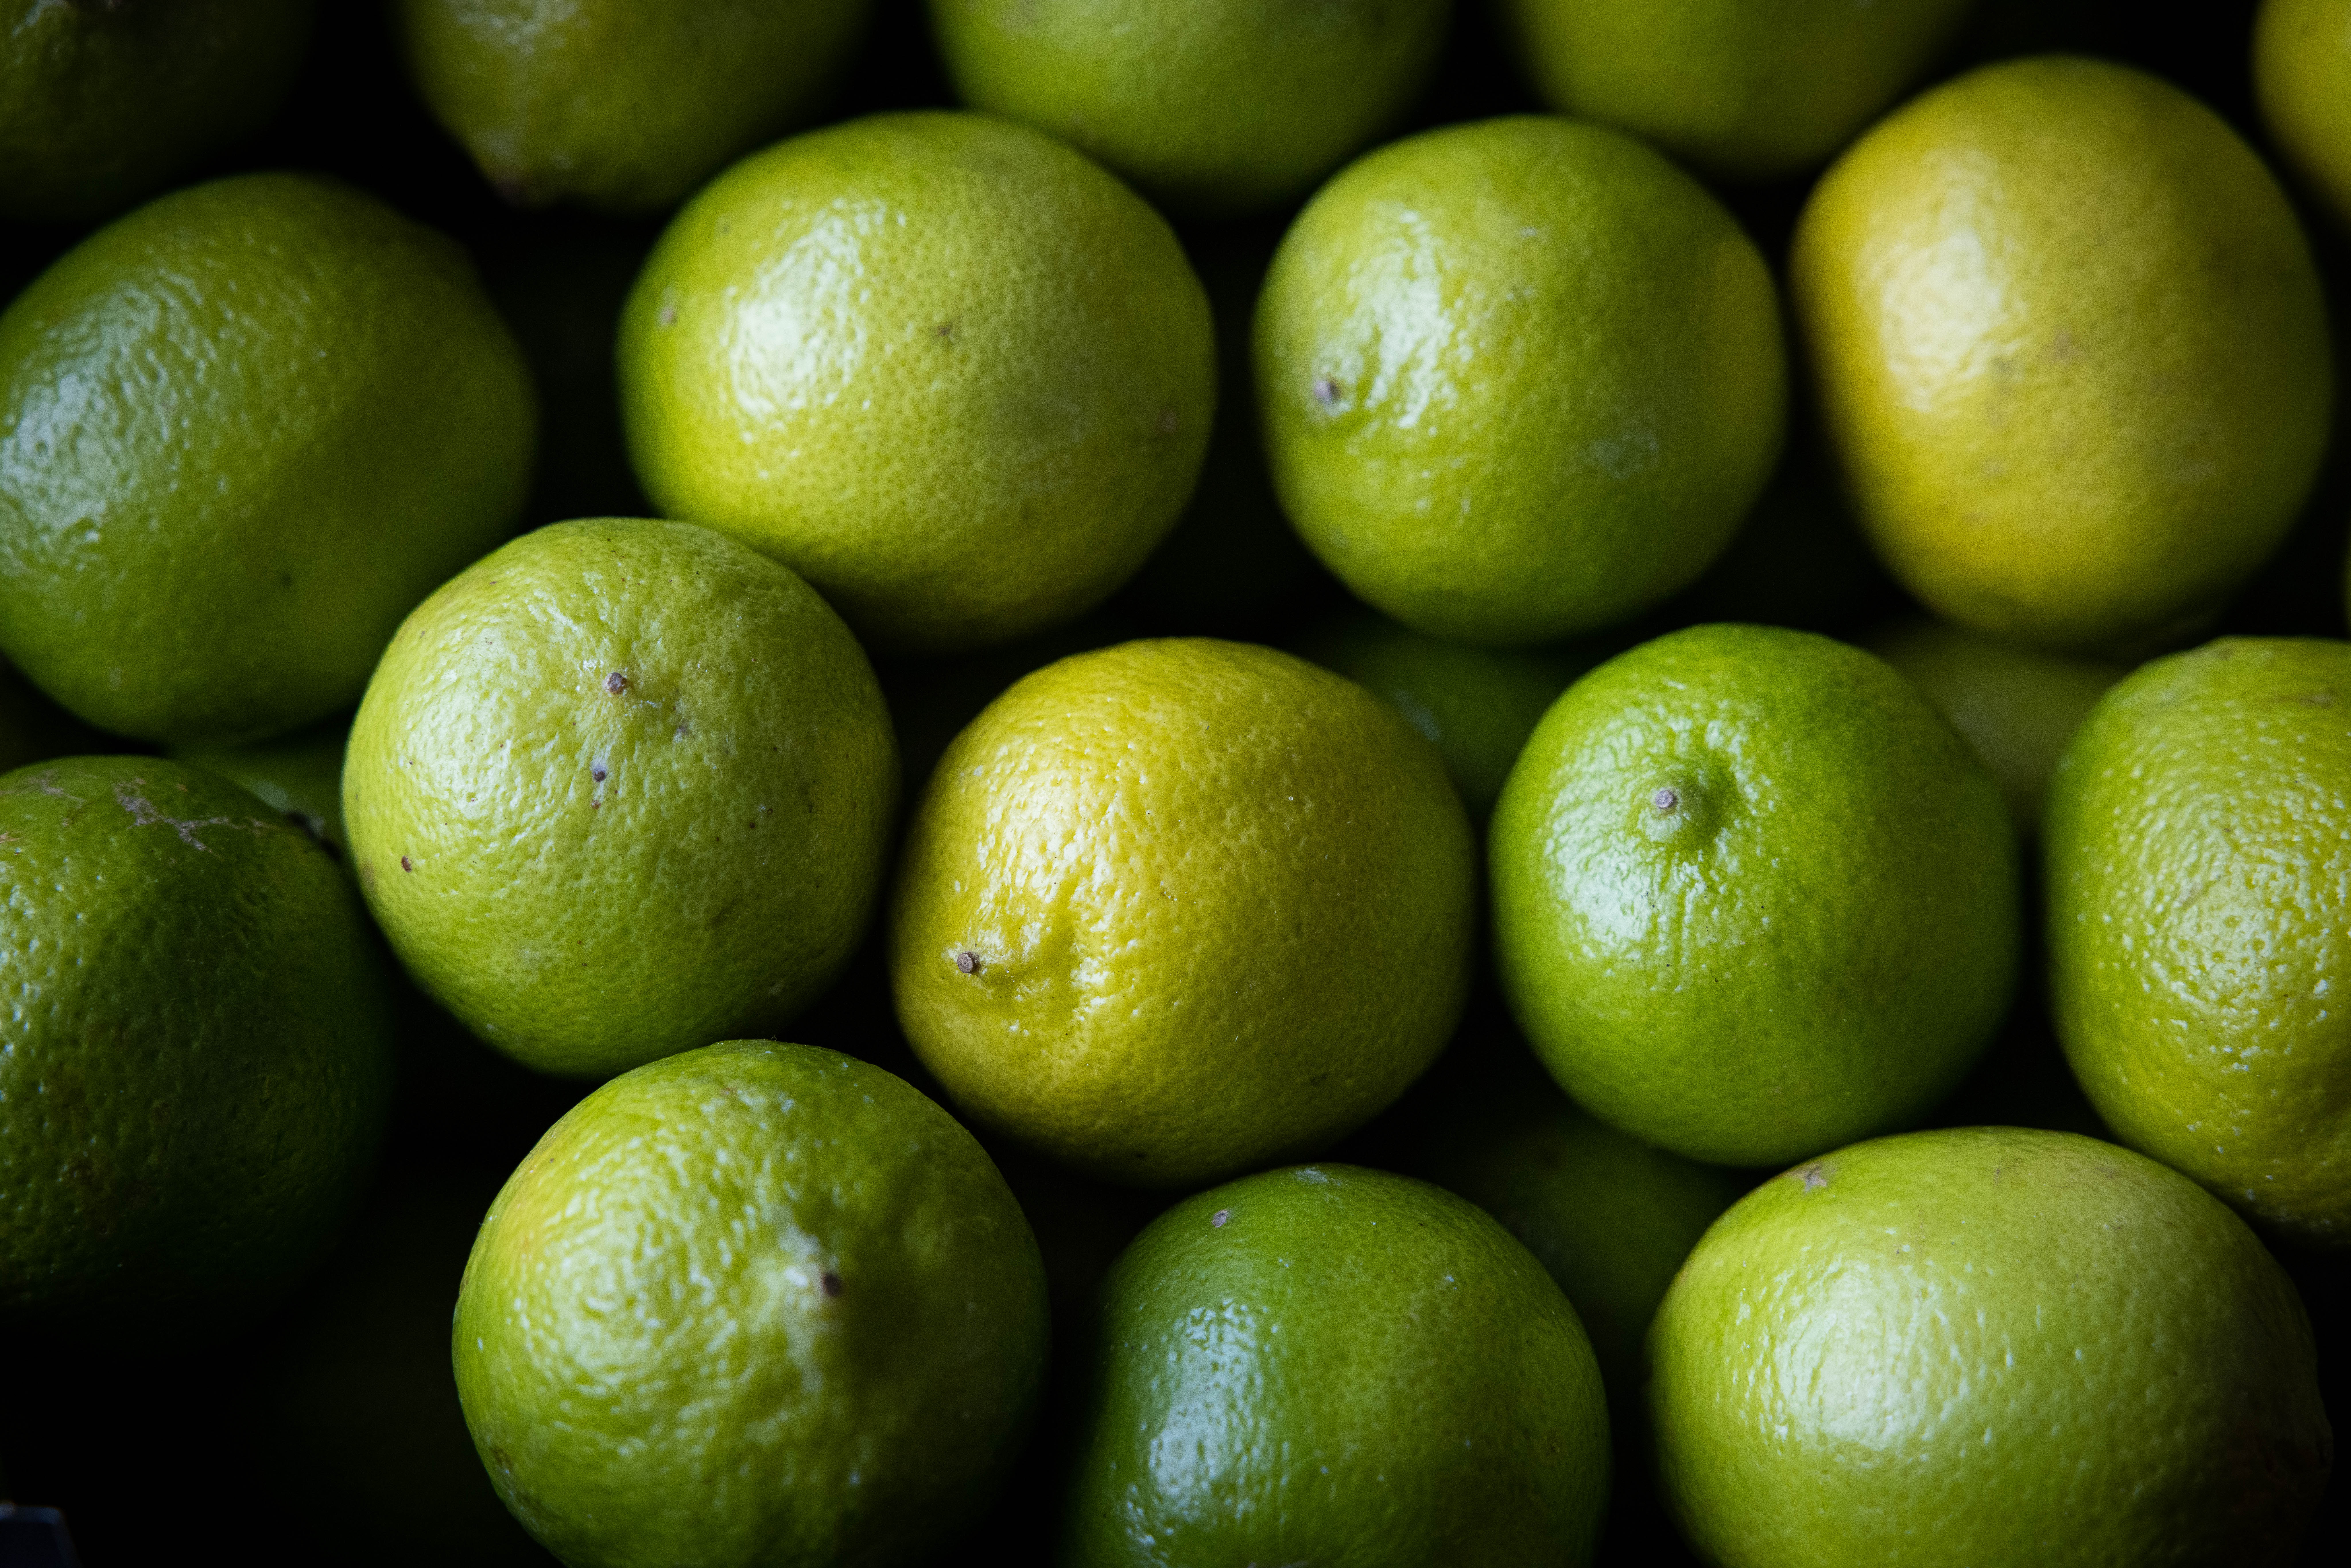 Pesticidas, nuevo informe de Greenpeace: en limones brasileños vendidos en la UE, una mezcla de sustancias tóxicas